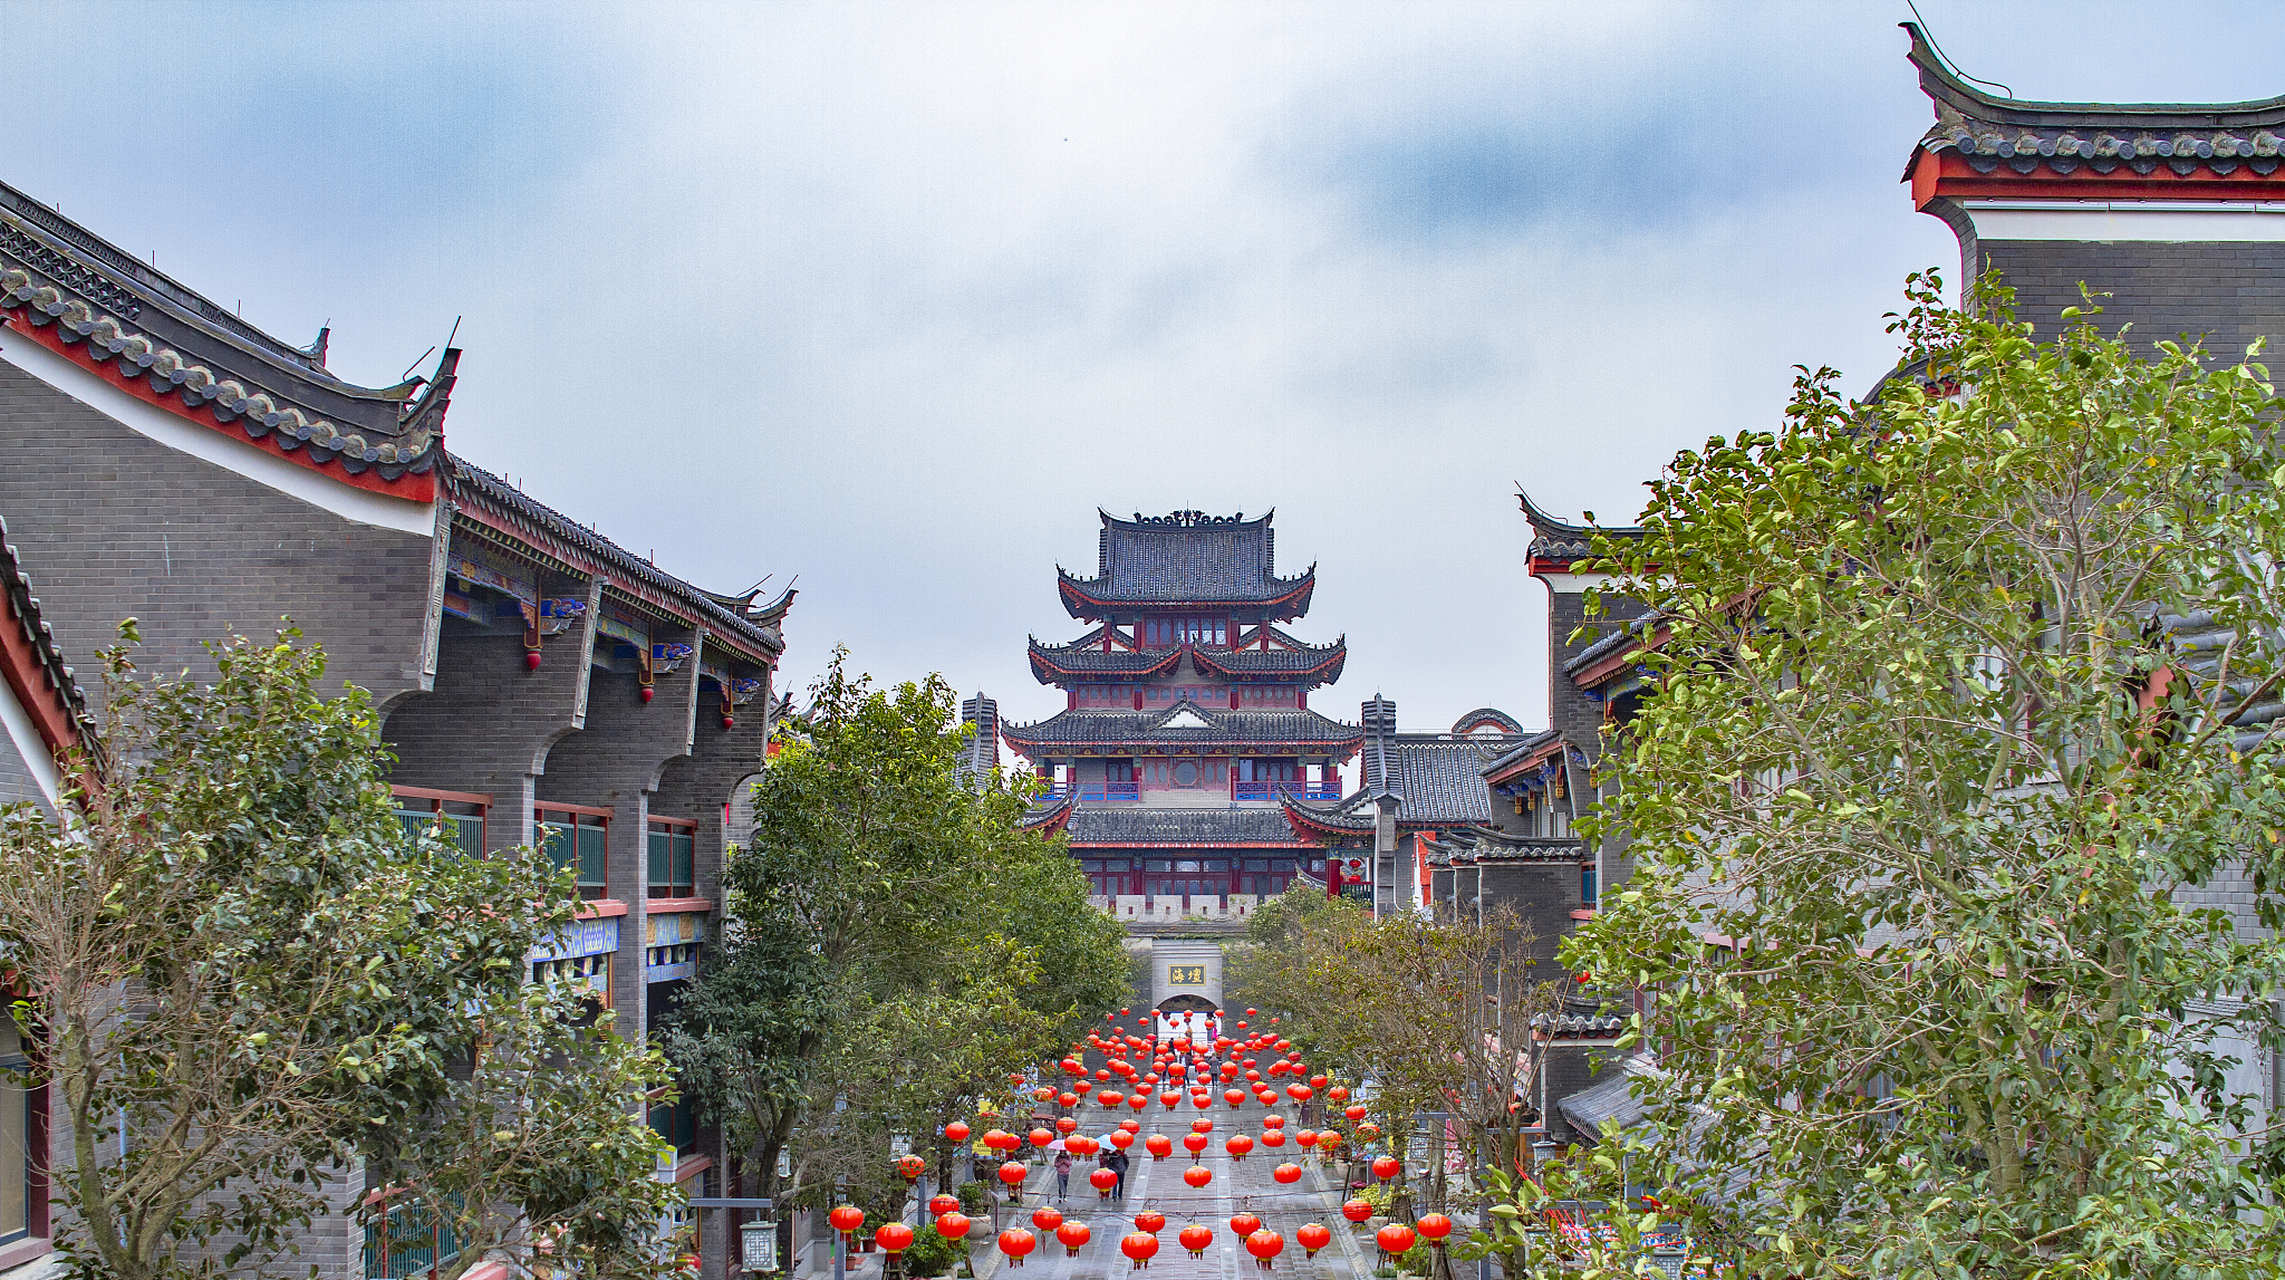 零陵古城位于中国湖南省永州市,是一个有着悠久历史和独特魅力的旅游